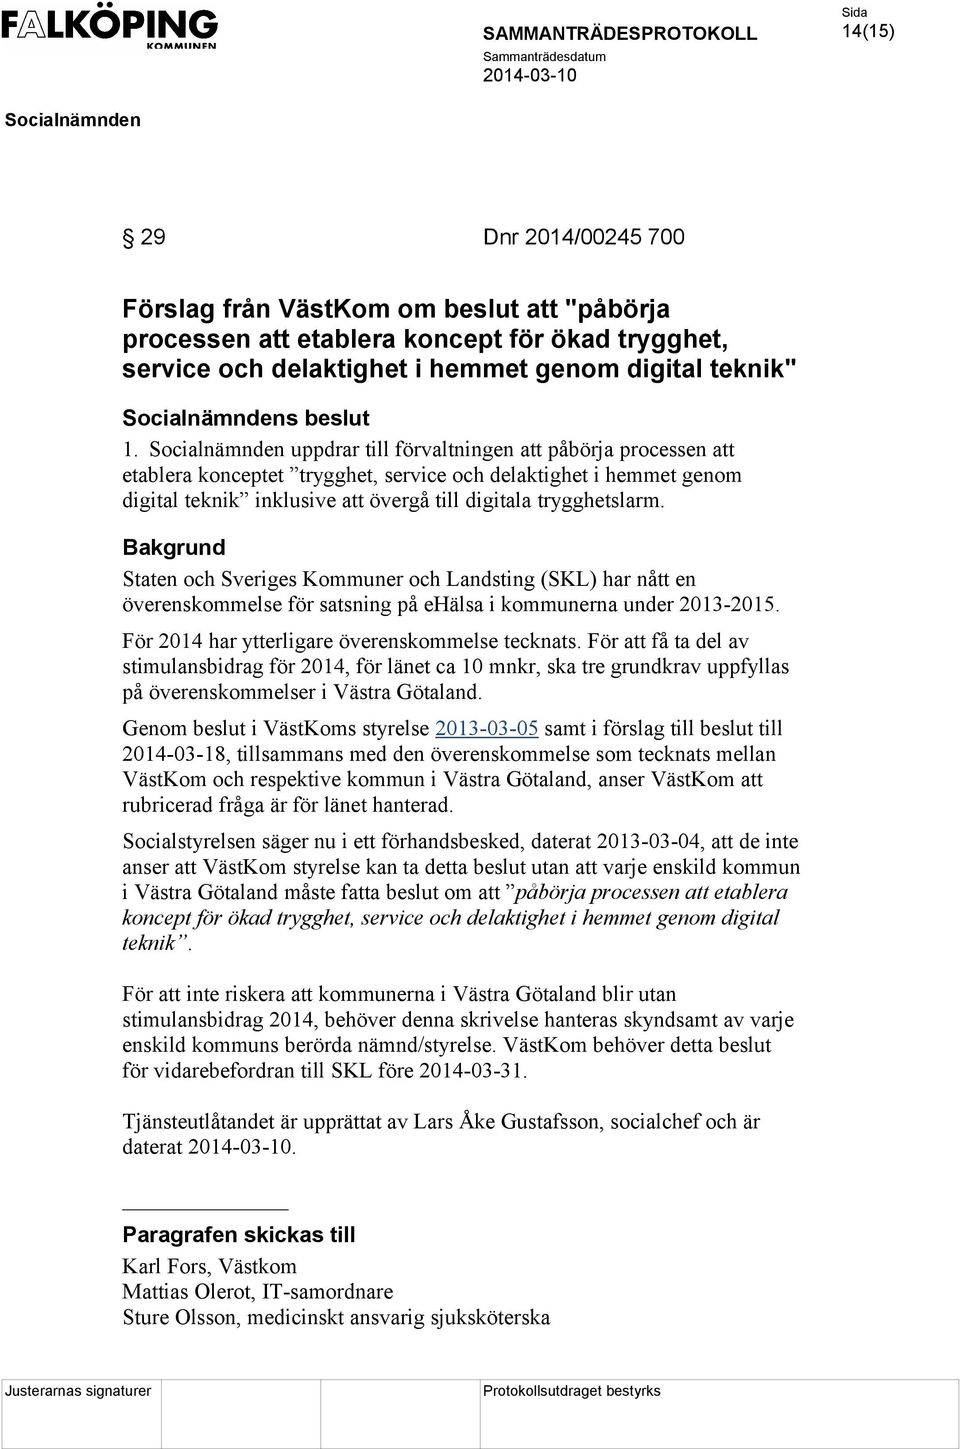 Staten och Sveriges Kommuner och Landsting (SKL) har nått en överenskommelse för satsning på ehälsa i kommunerna under 2013-2015. För 2014 har ytterligare överenskommelse tecknats.